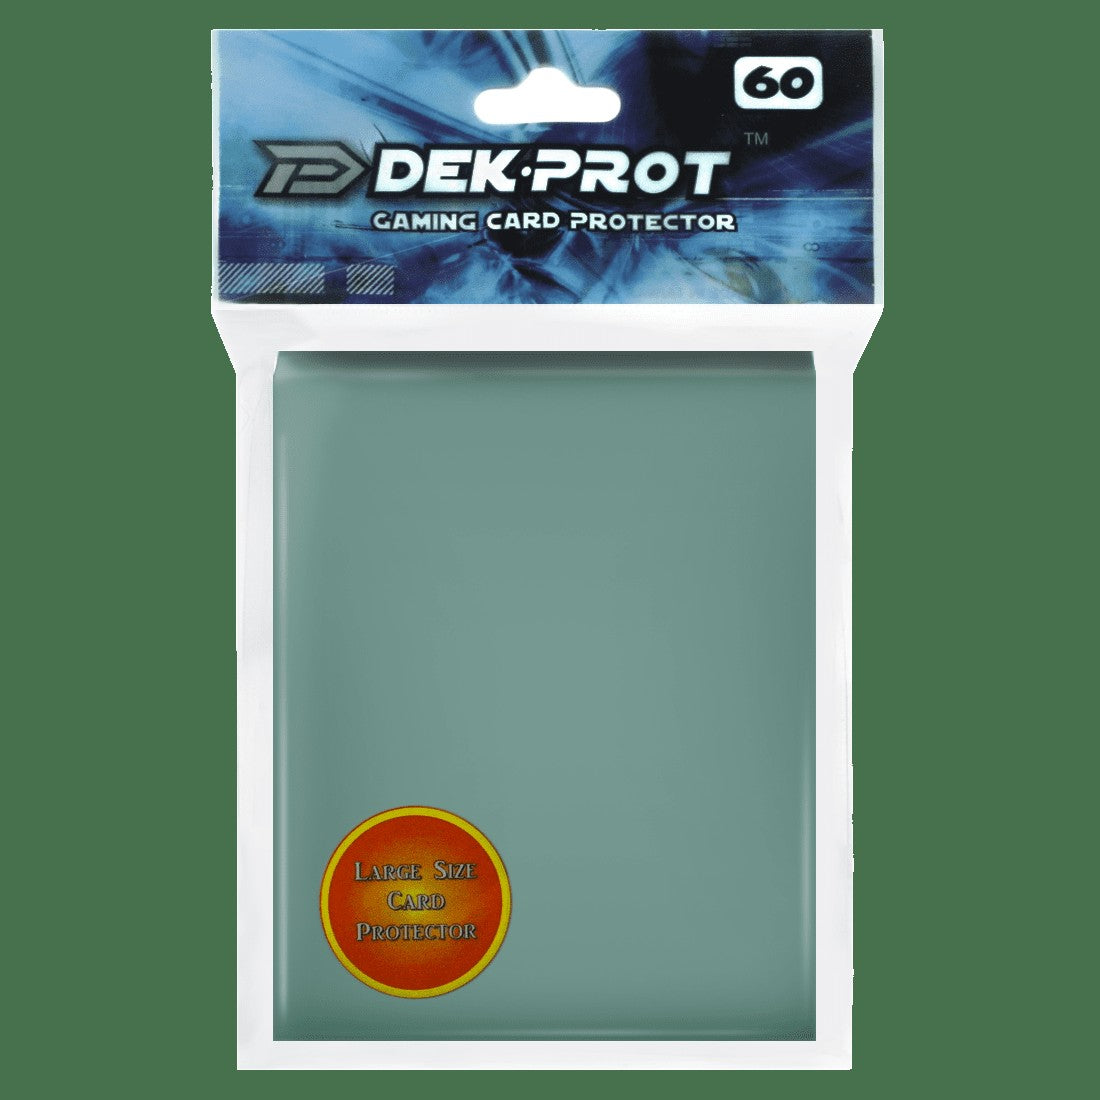 Dek Prot Standard Sized Card Sleeves - Cactus Green (60 Card Sleeves)